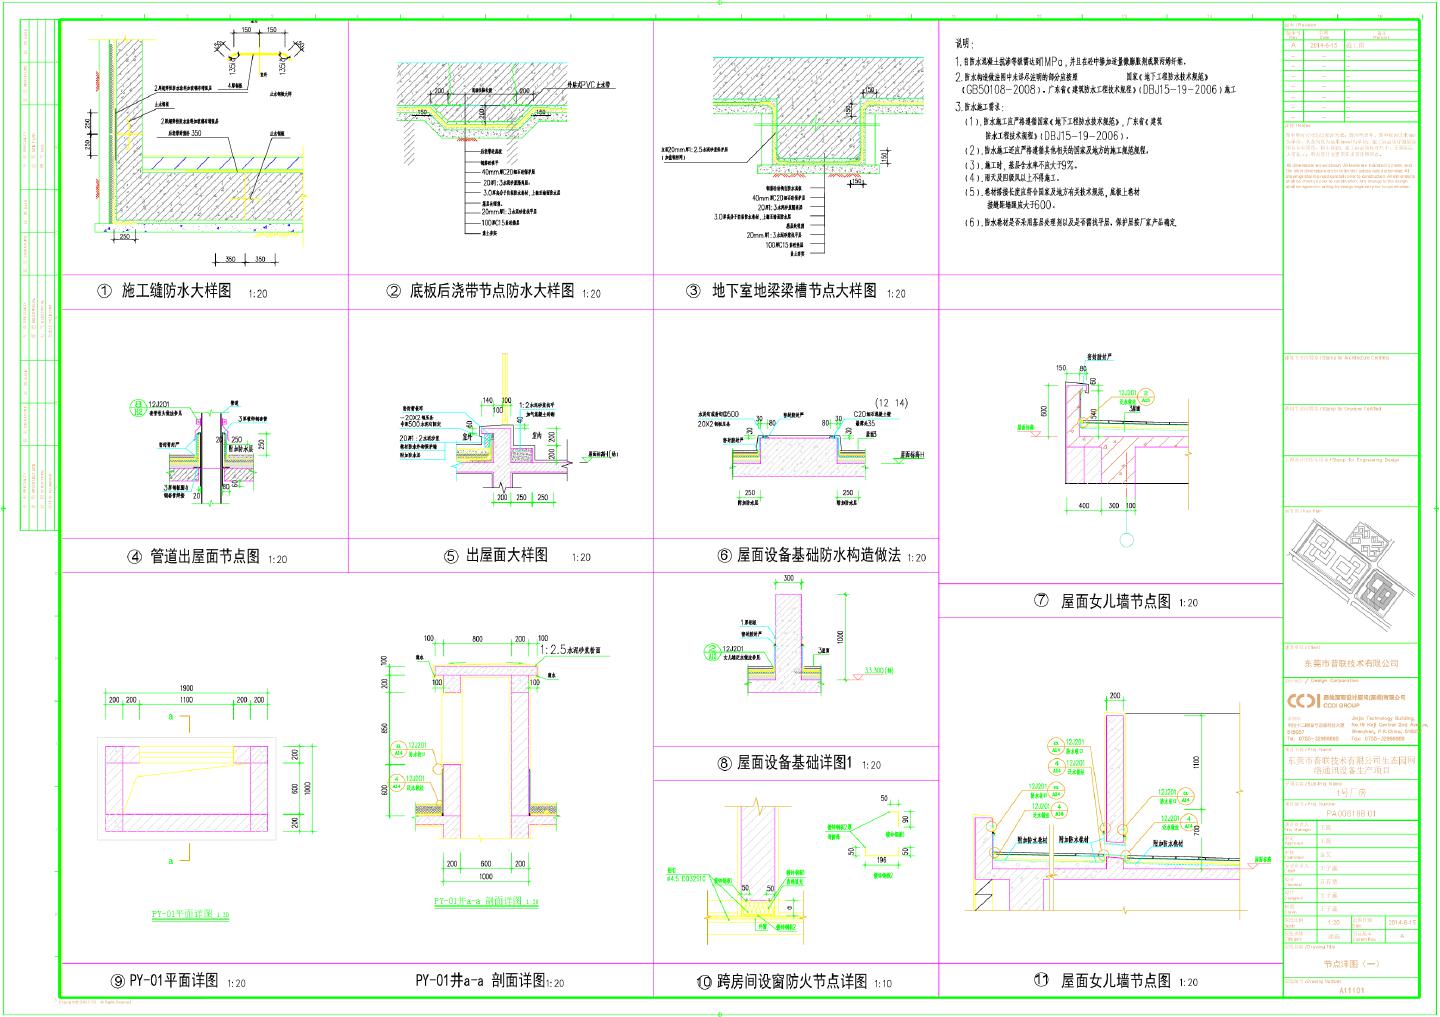 生态园网络通讯设备生产项目1号厂房-节点详图CAD图